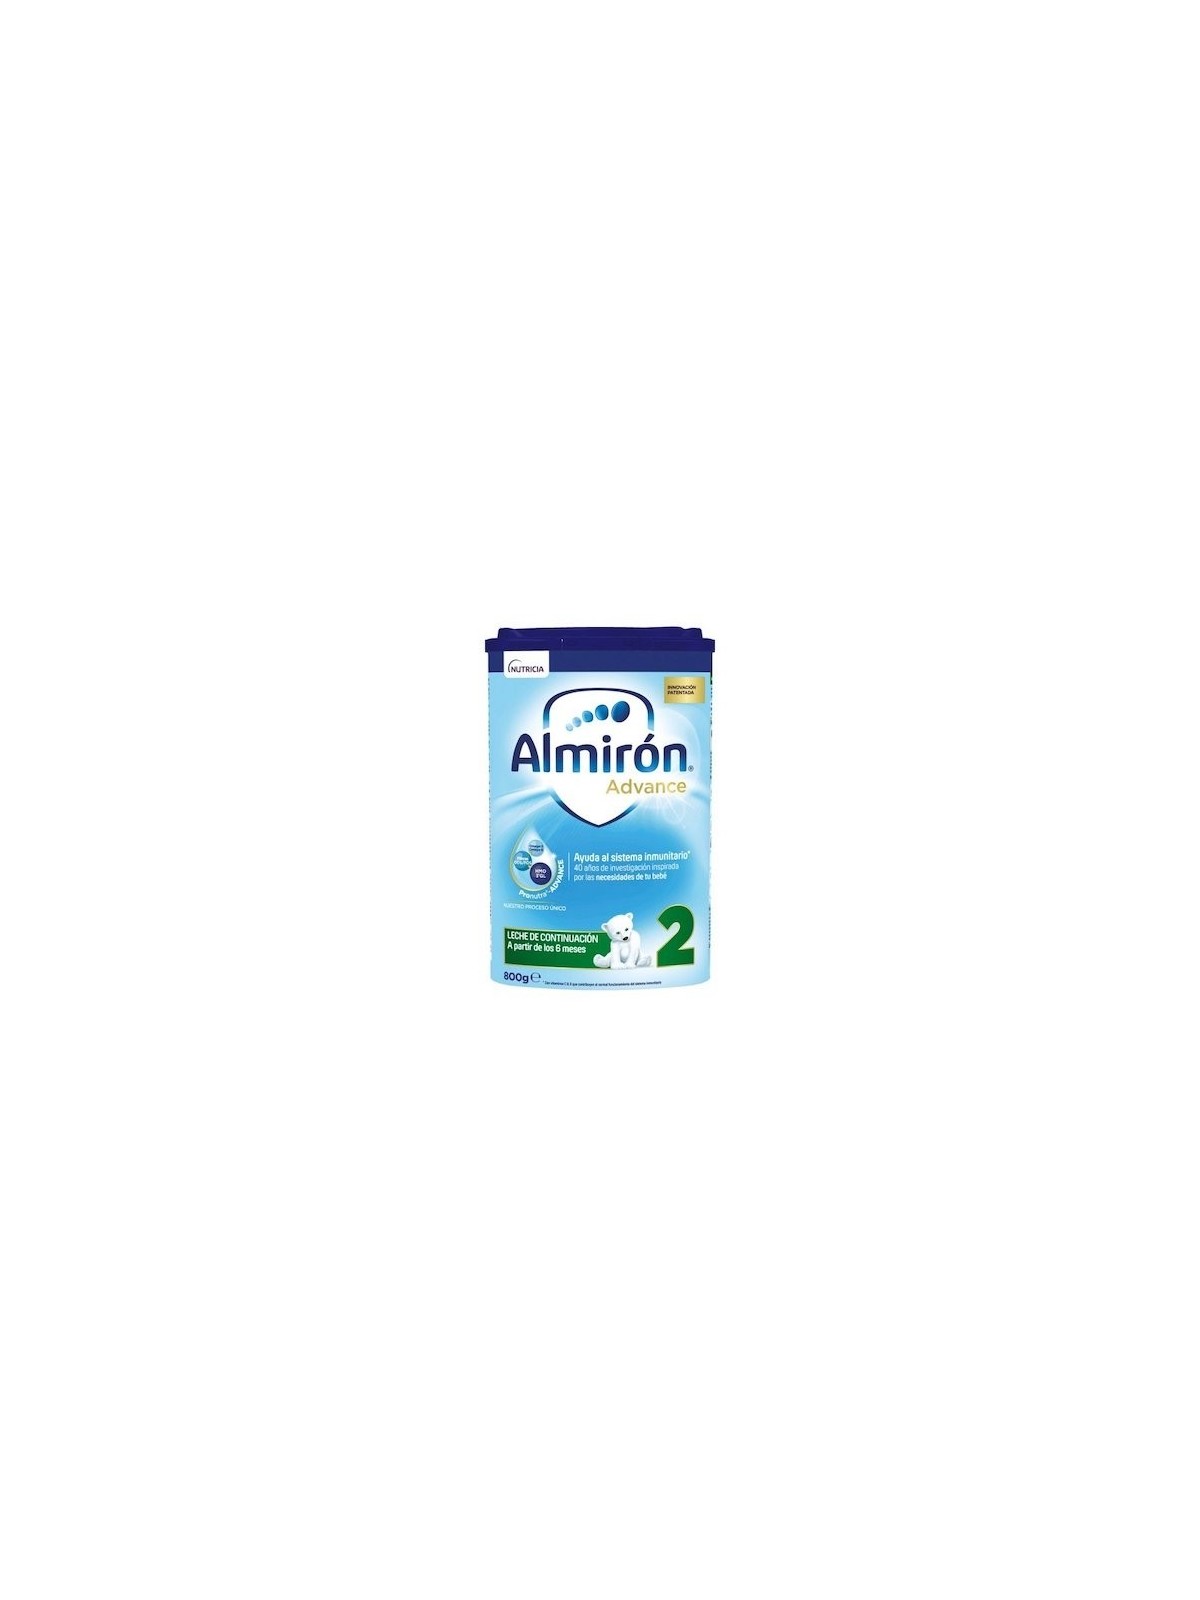 Almirón advance 2 - nutricia